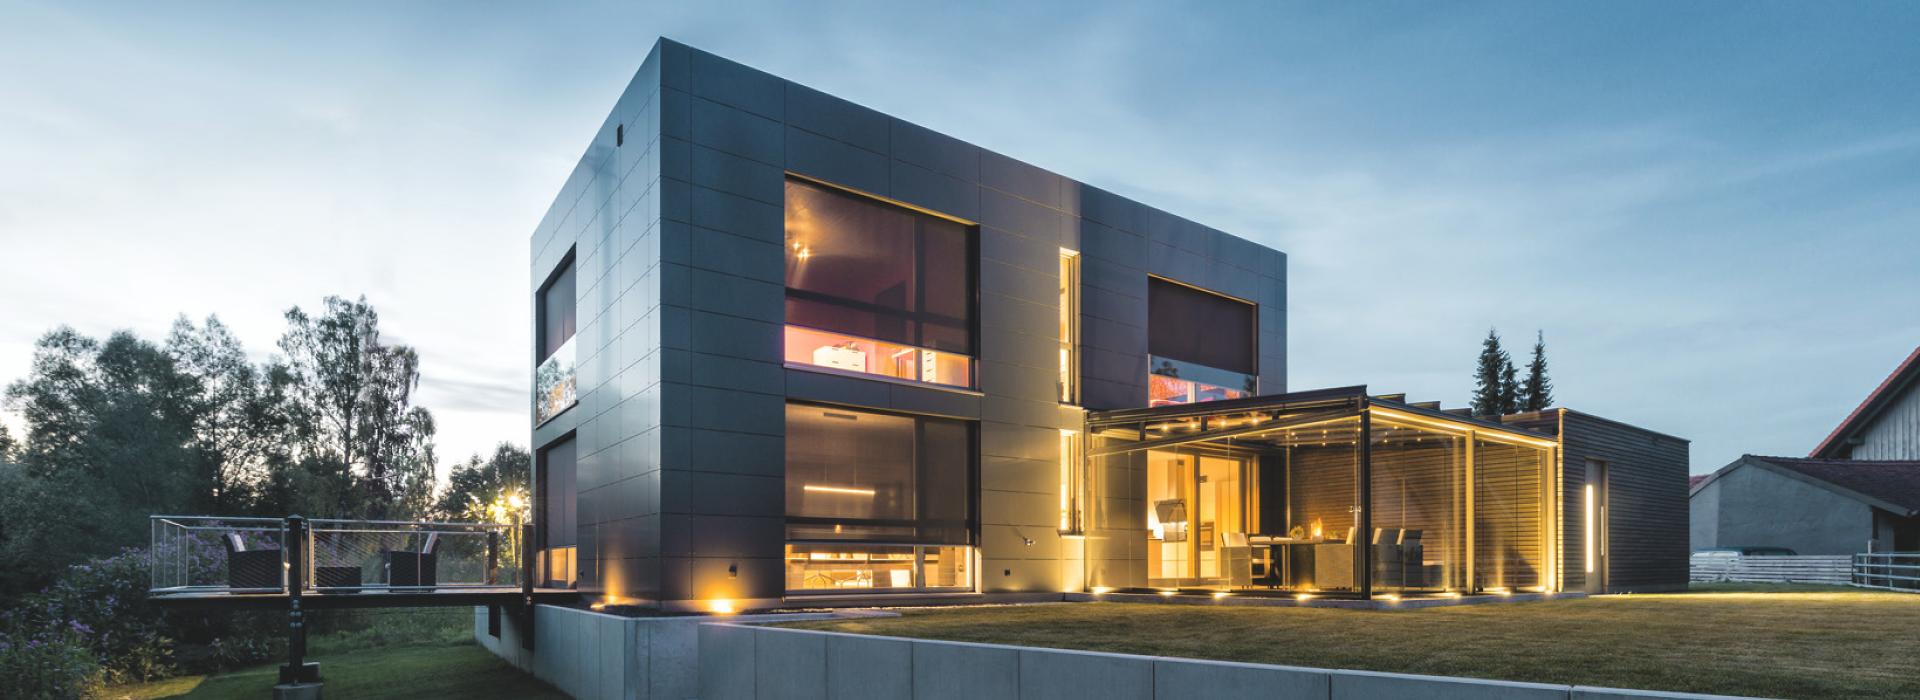 Modernes Haus bei Dämmerung mit Innenbeleuchtung und runtergelassenen Vorbautextilscreens